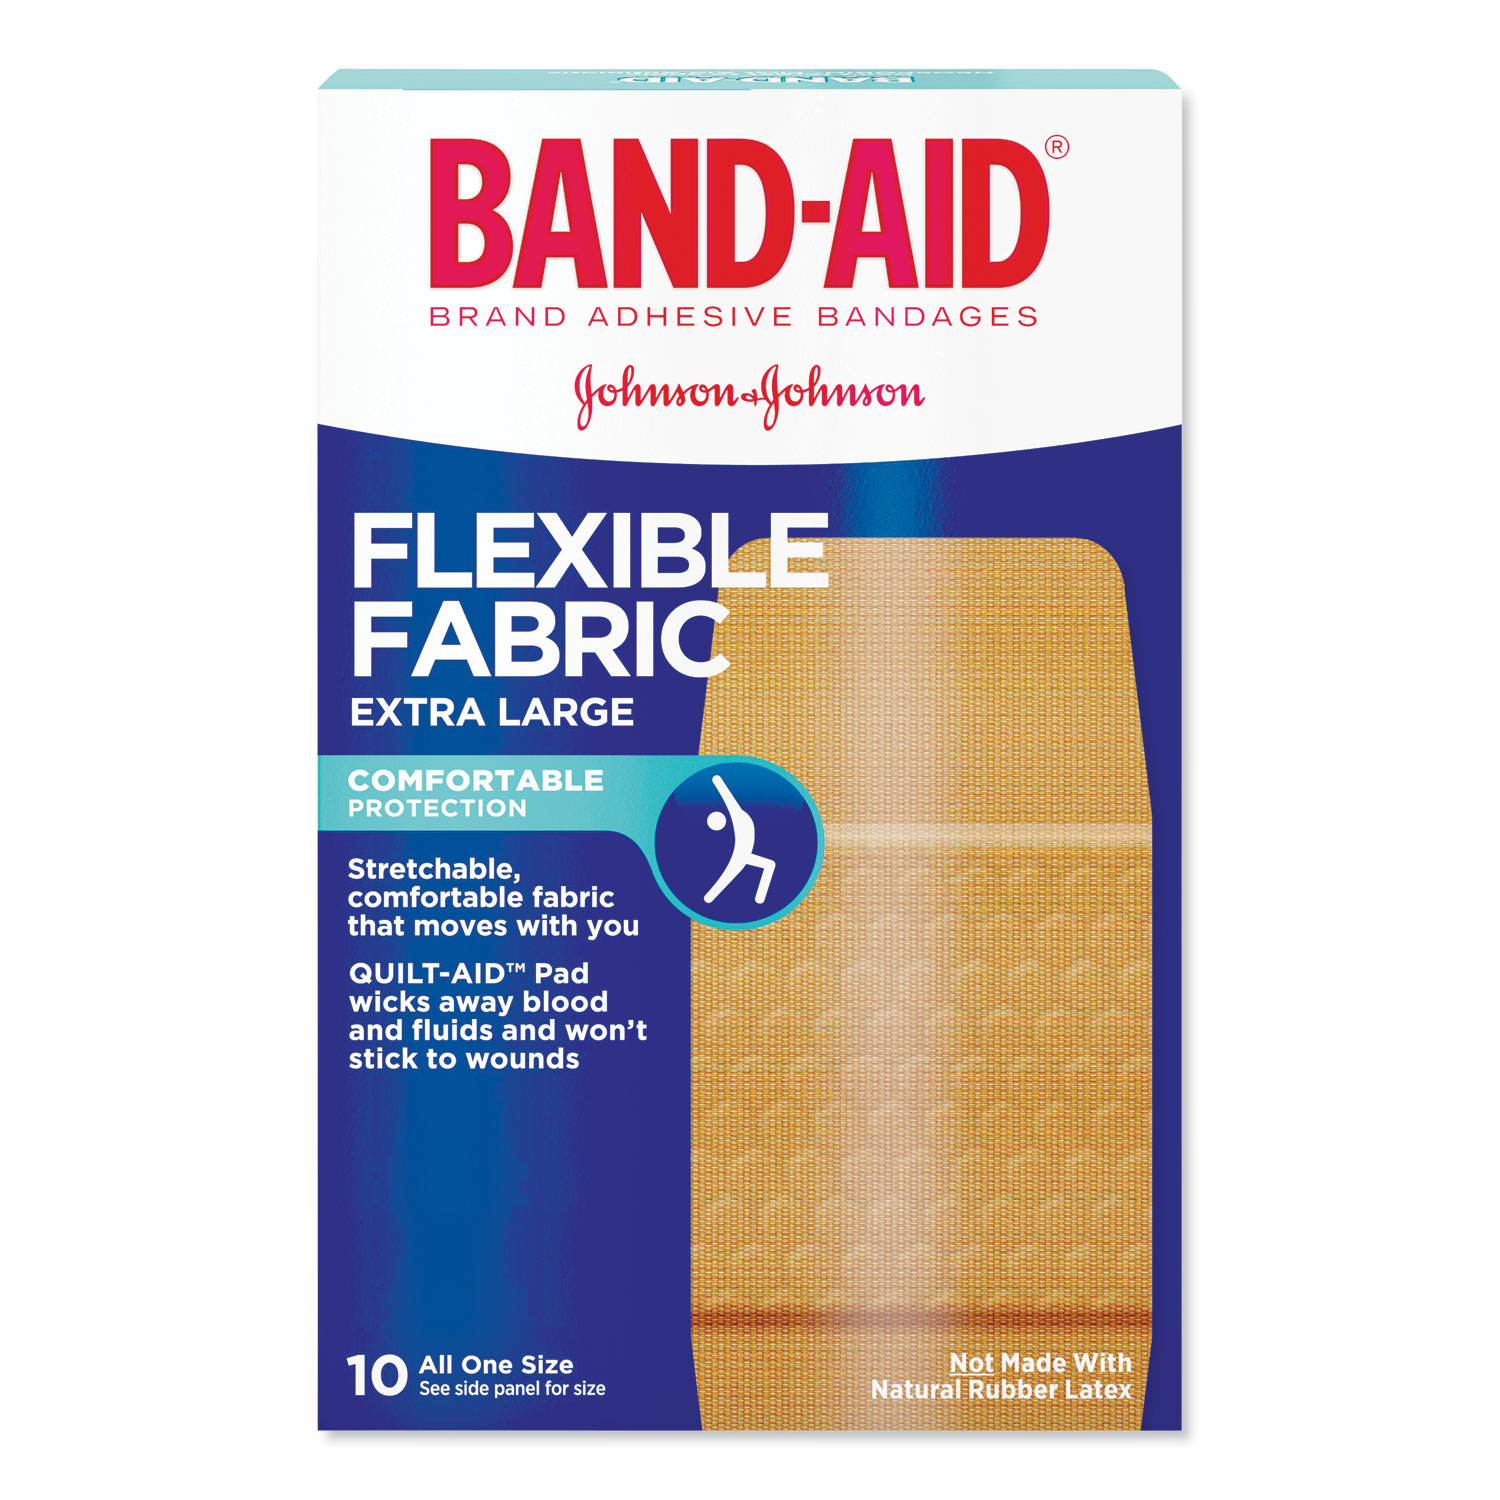  BAND-AID 111834100 Flexible Fabric Extra Large Adhesive Bandages, 1.25 x 4, 10/Box (JOJ5685) 